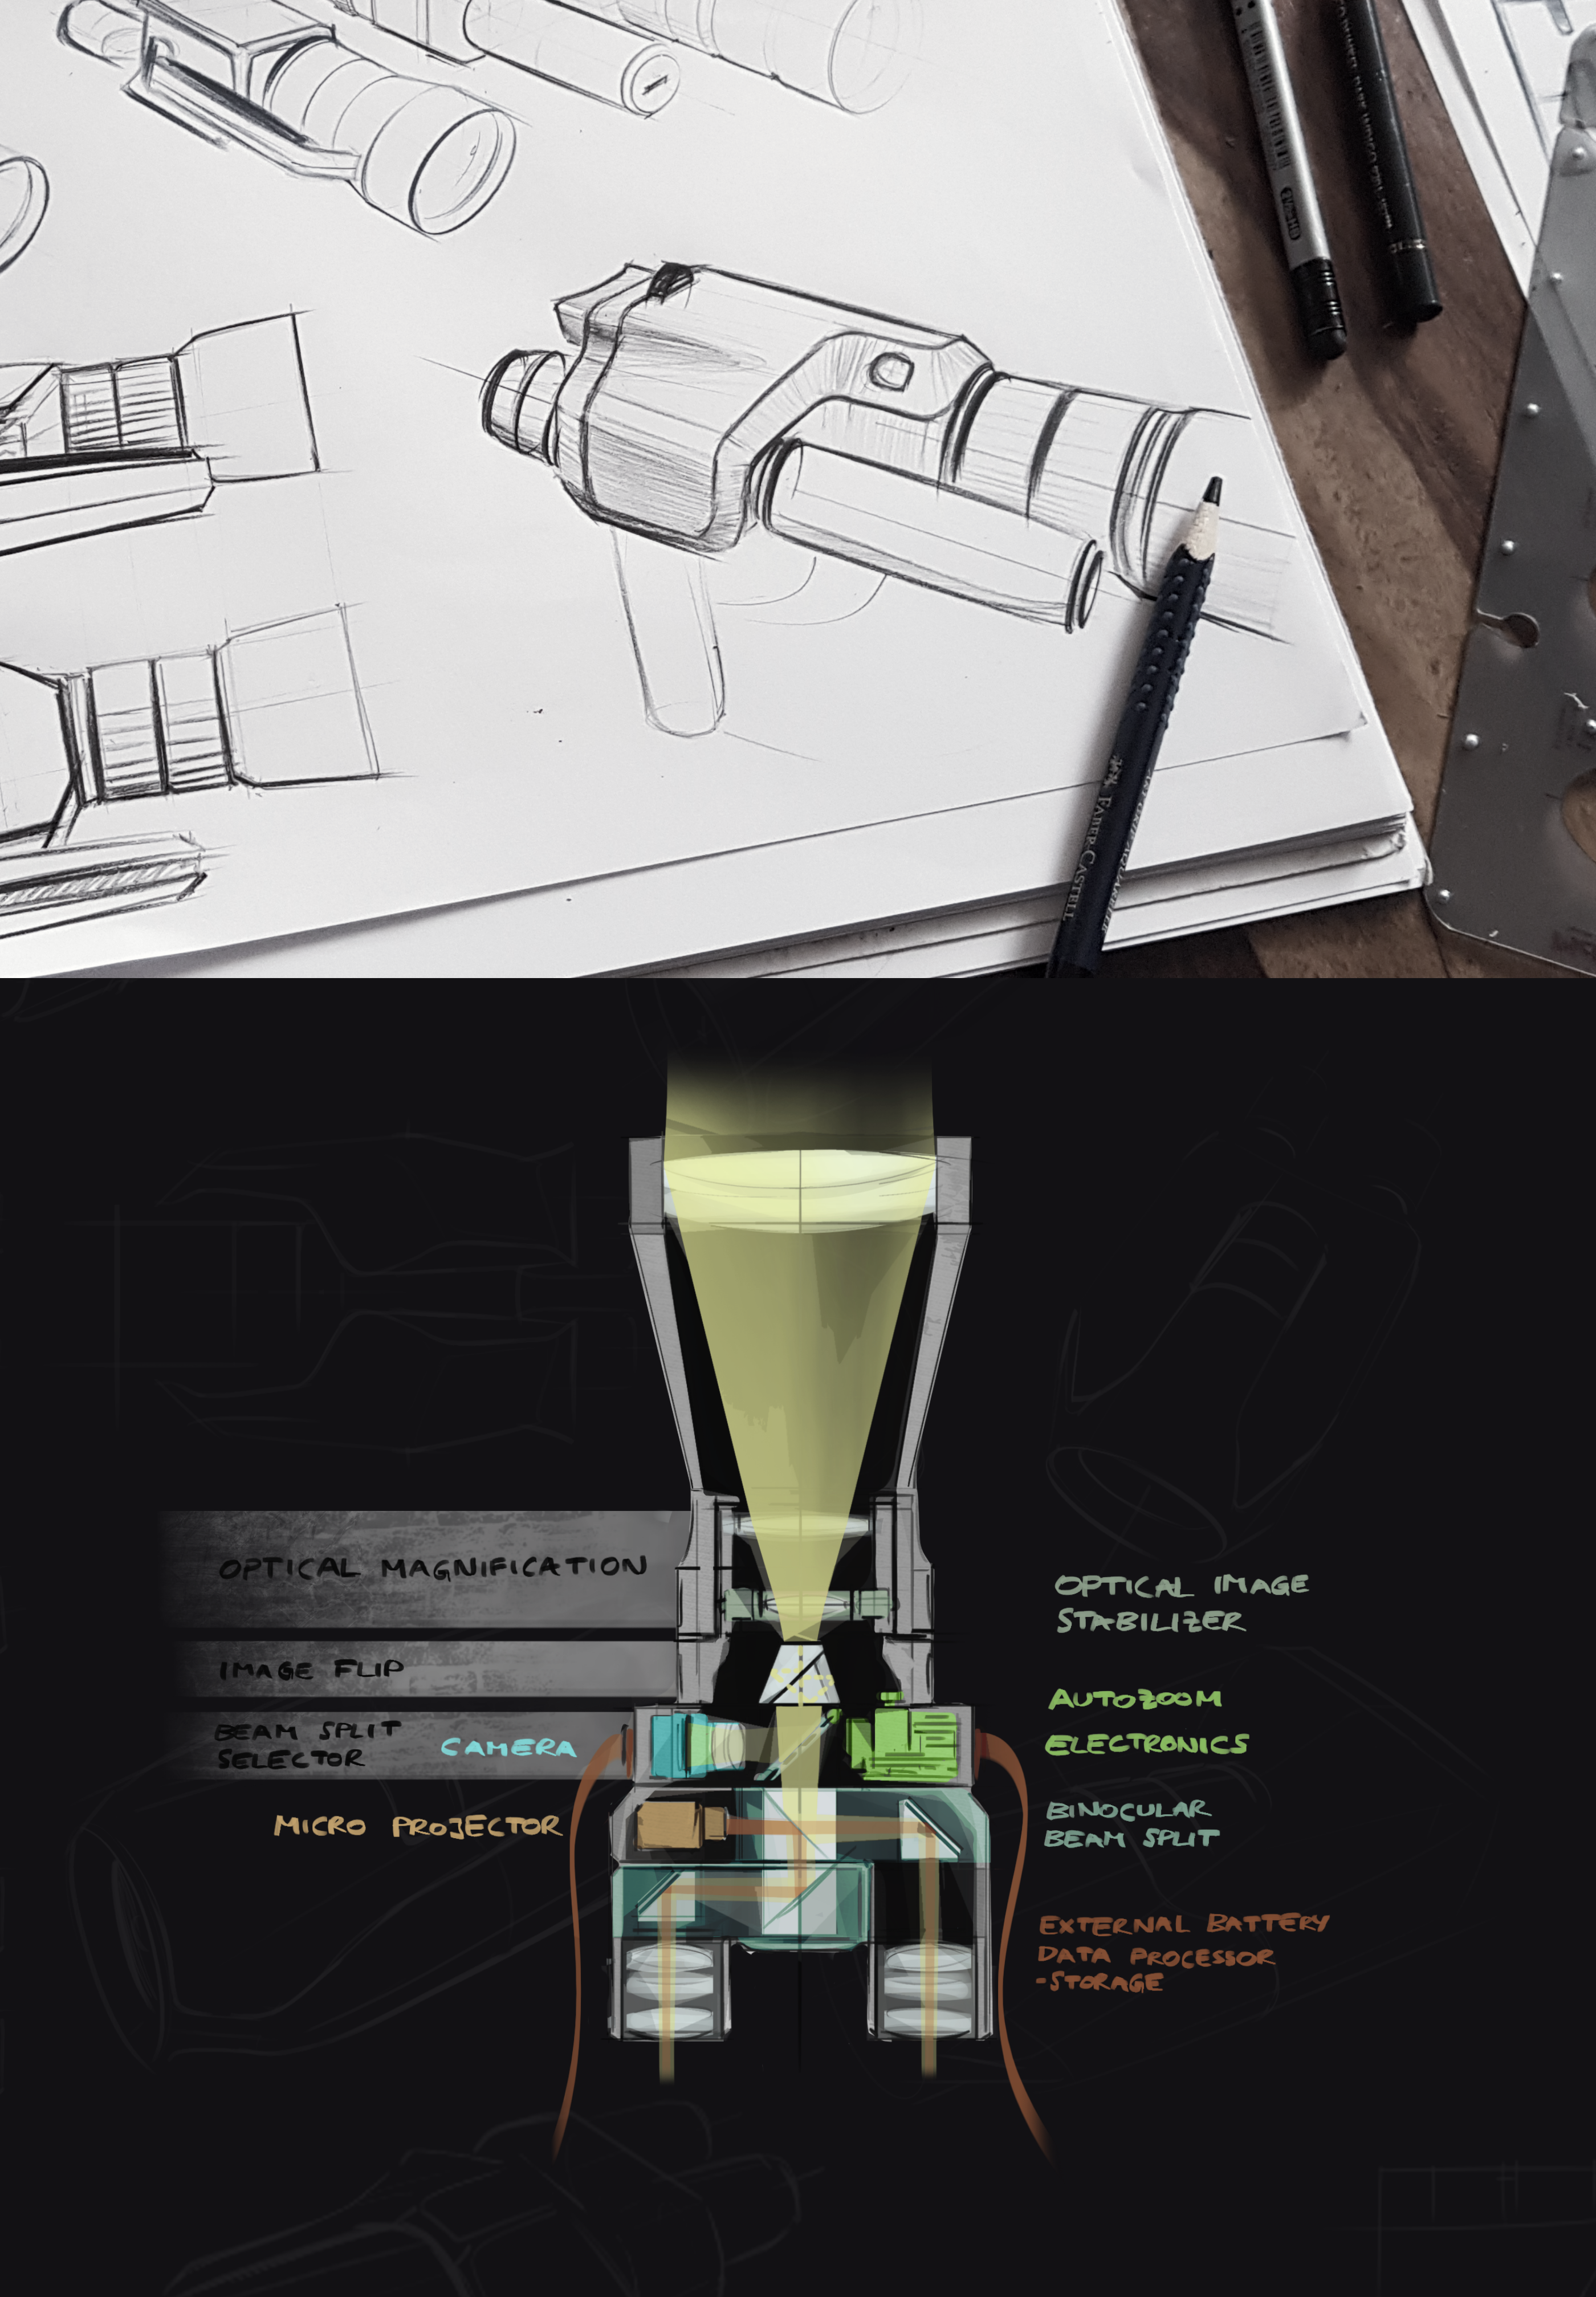 Digiscope Fernglas Designstudie Funktionsweise